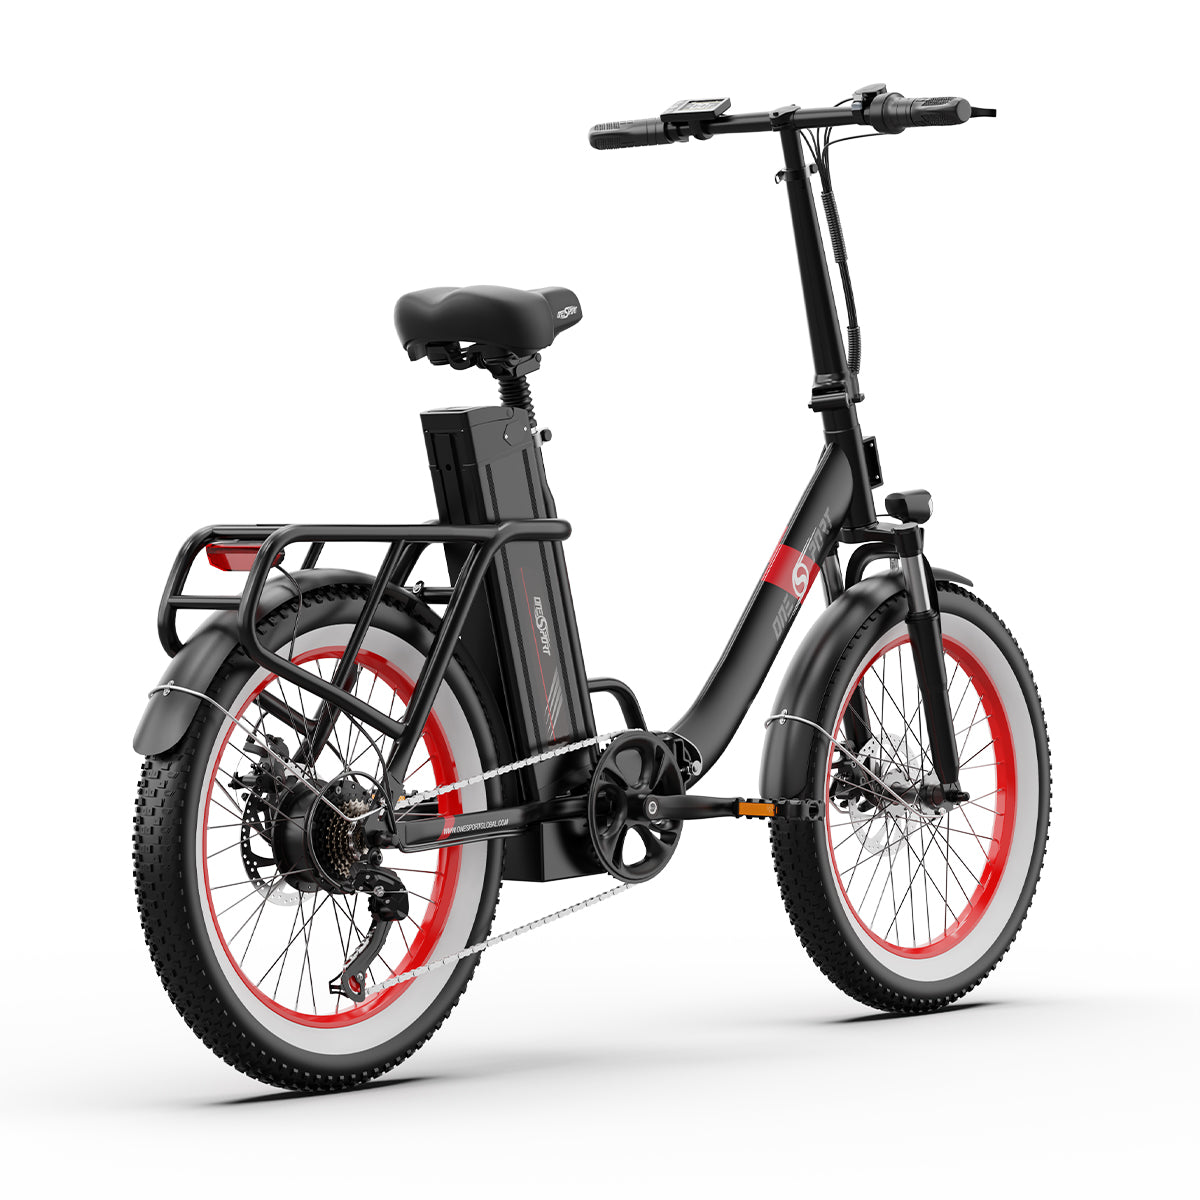 ONESPORT-OT16 City Electric Bike Step-Thru 15.6ah 250W 48V 20in Foldable